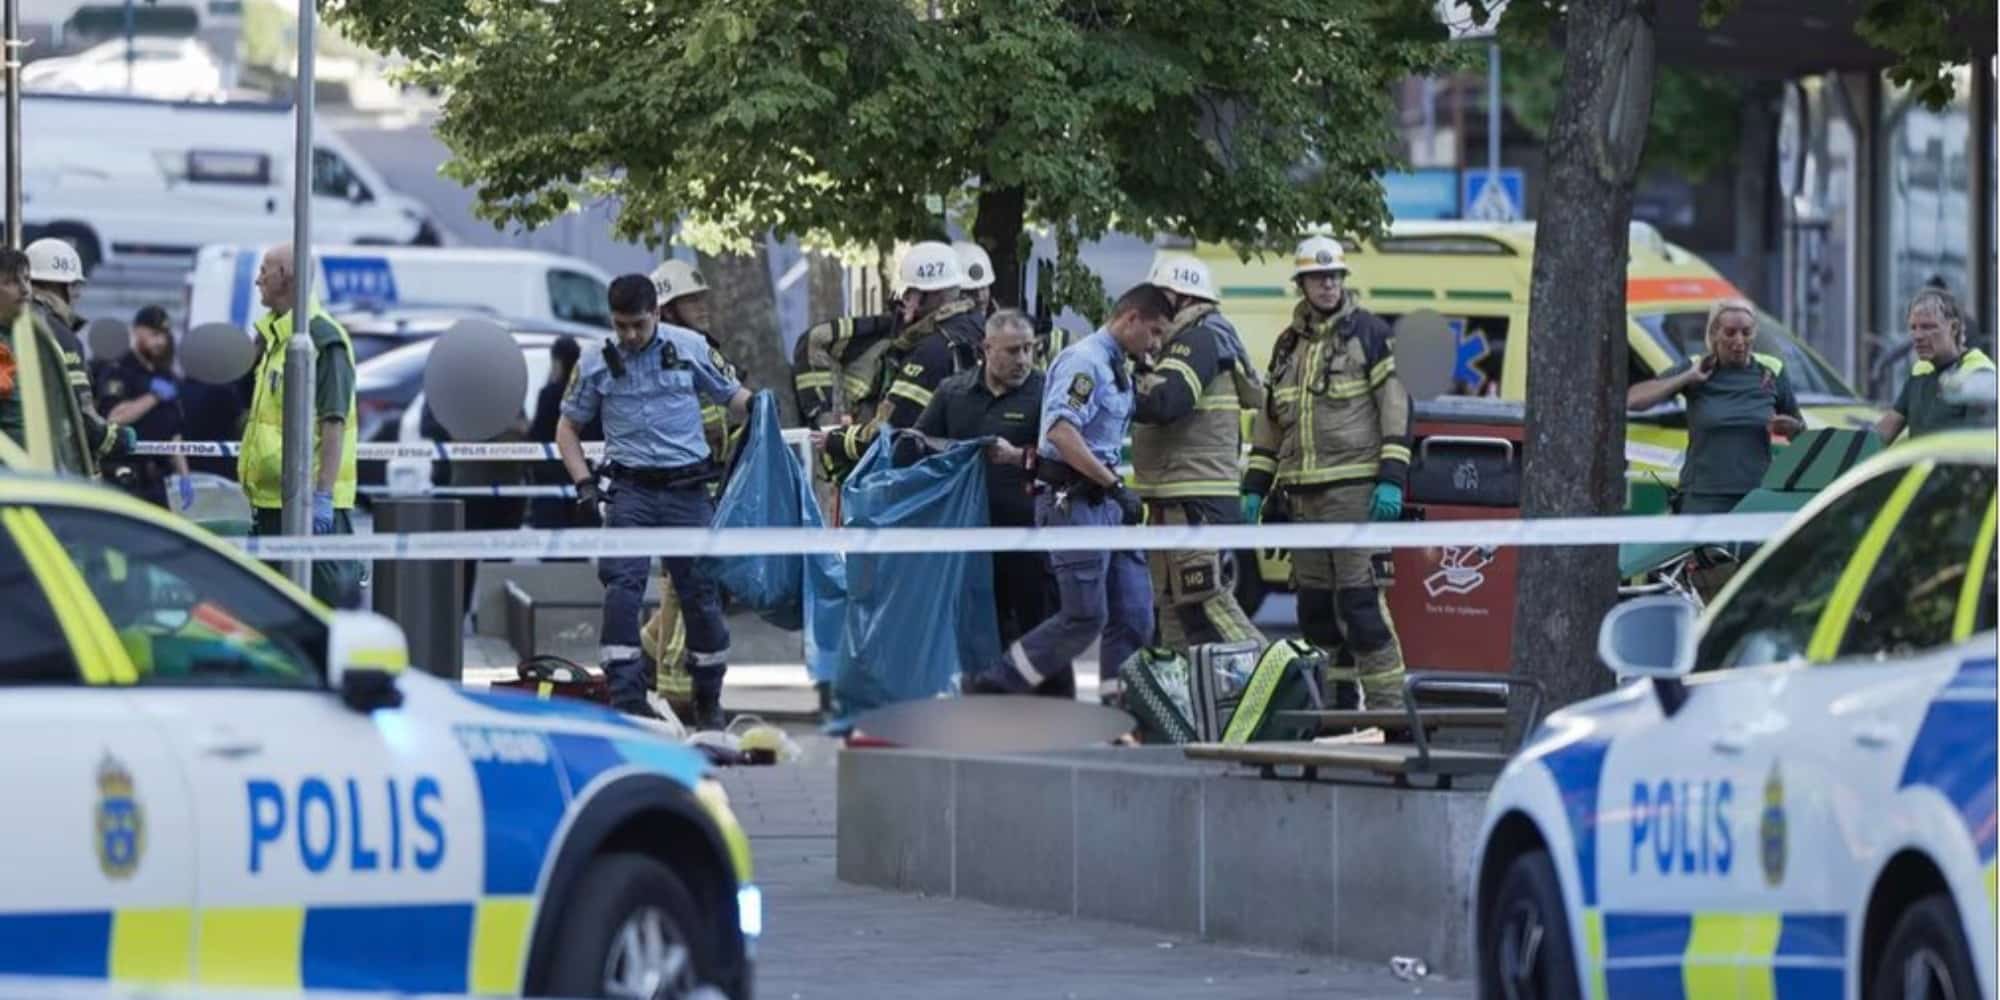 Εικόνα από το σημείο που έπεσαν οι πυροβολισμοί στη Σουηδία